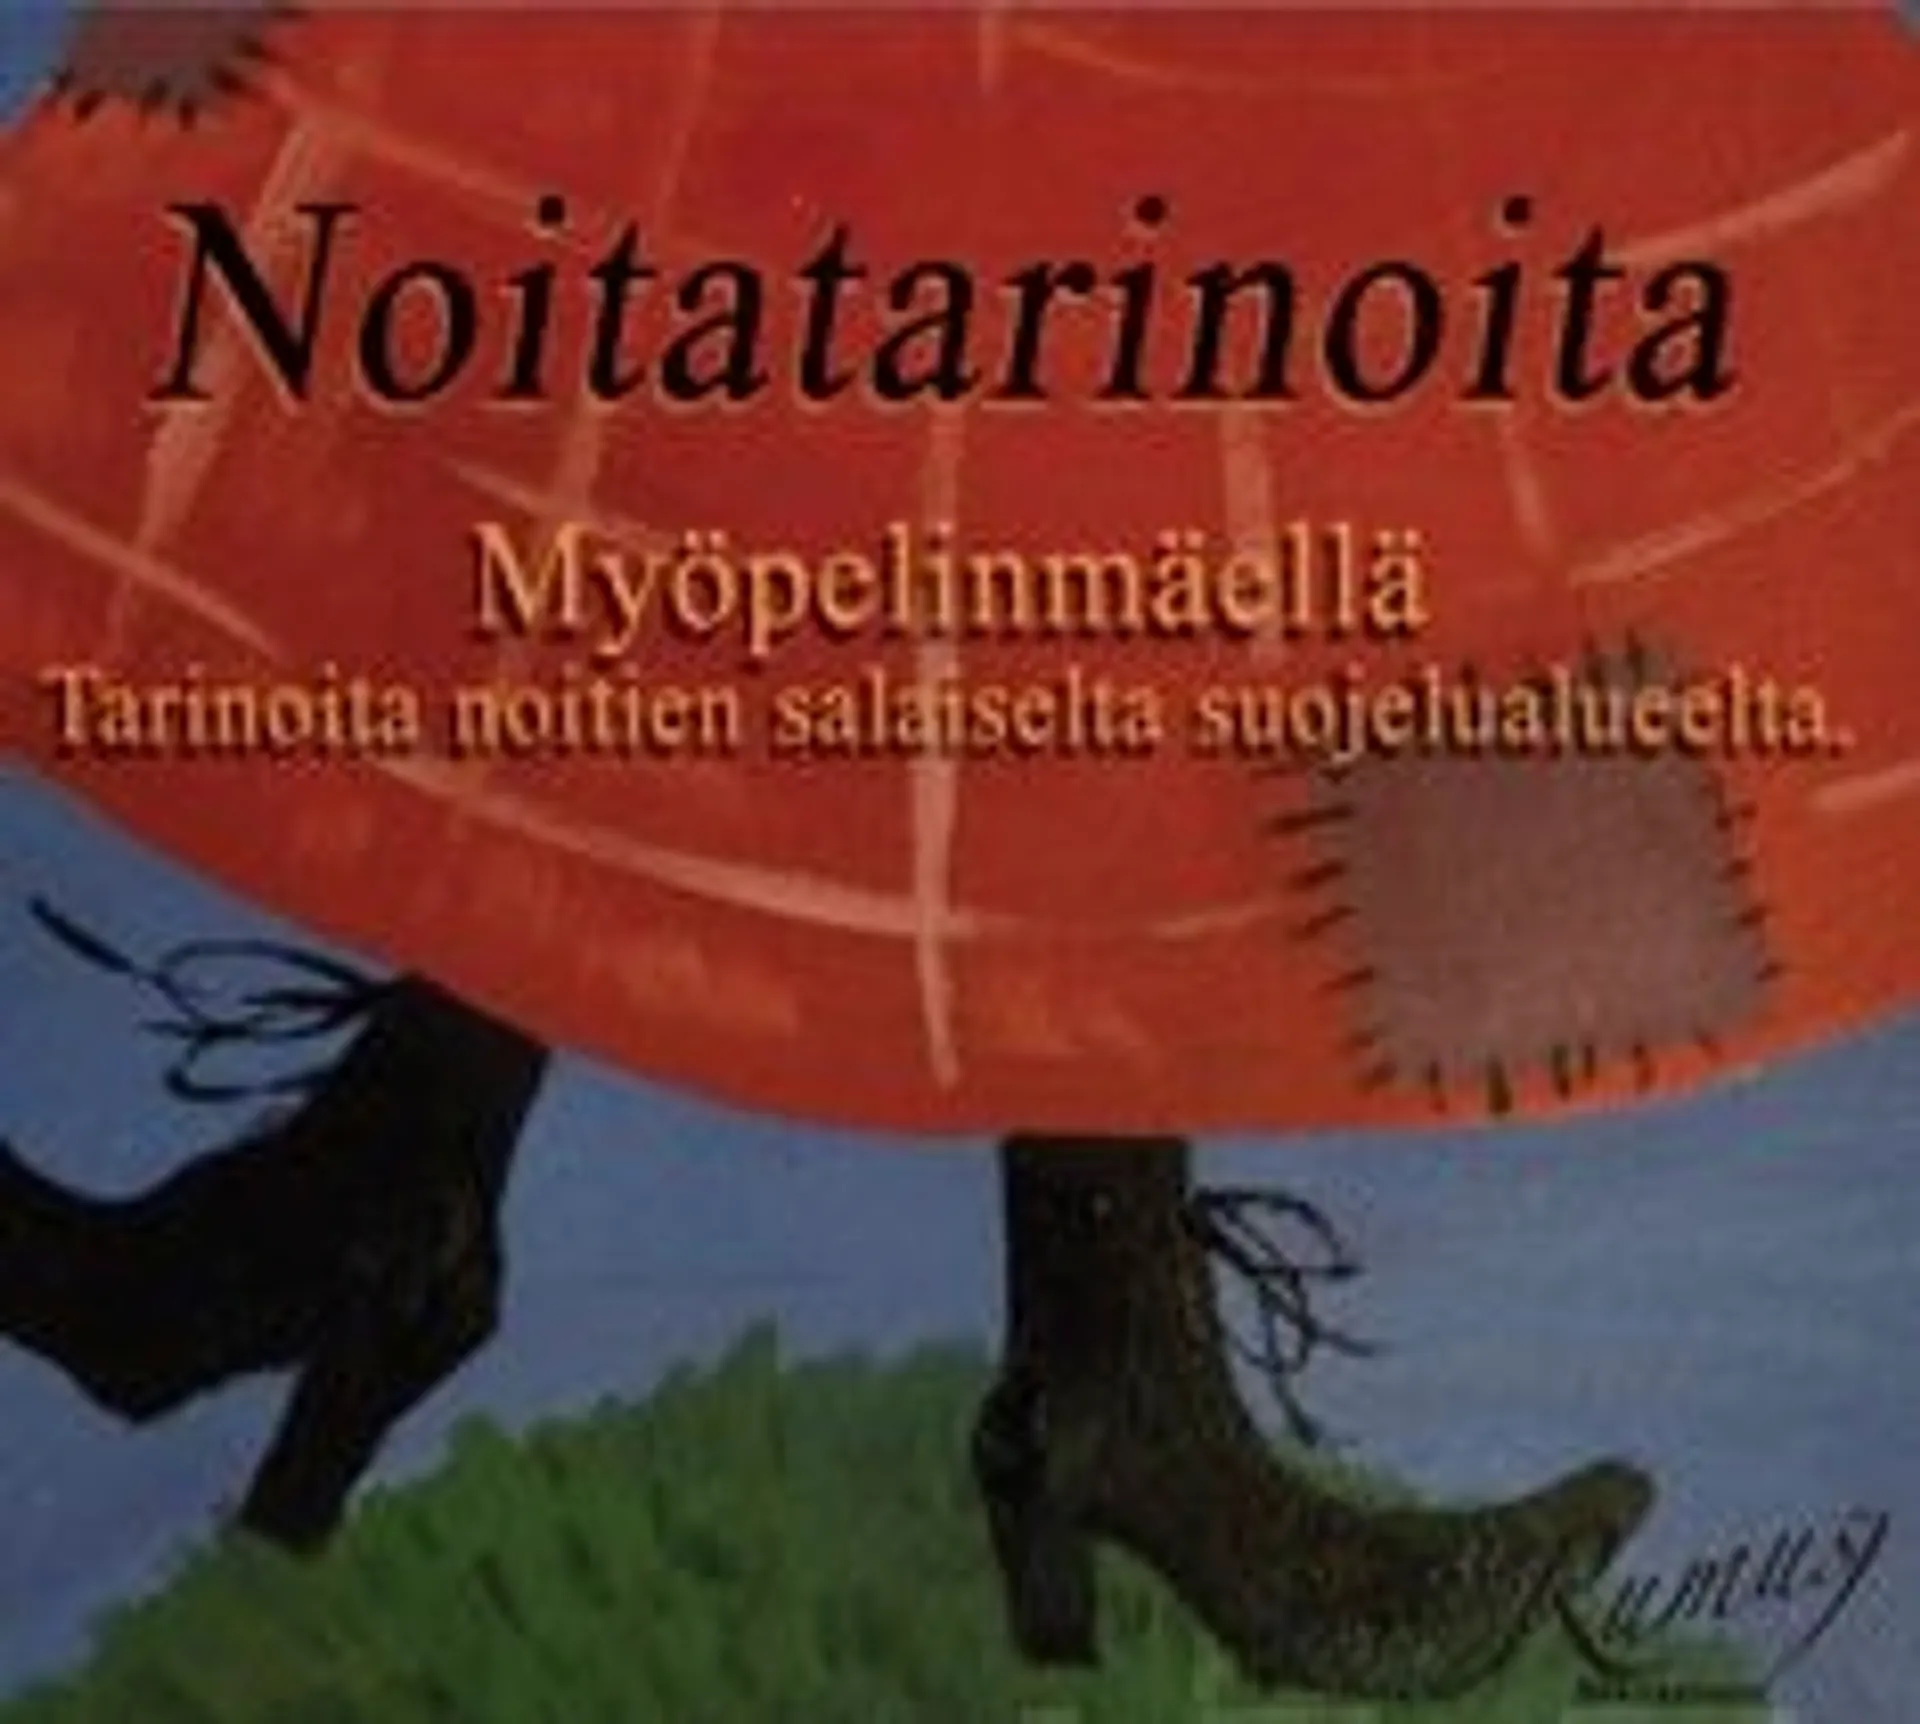 Heikkilä, Noitatarinoita (2 cd)